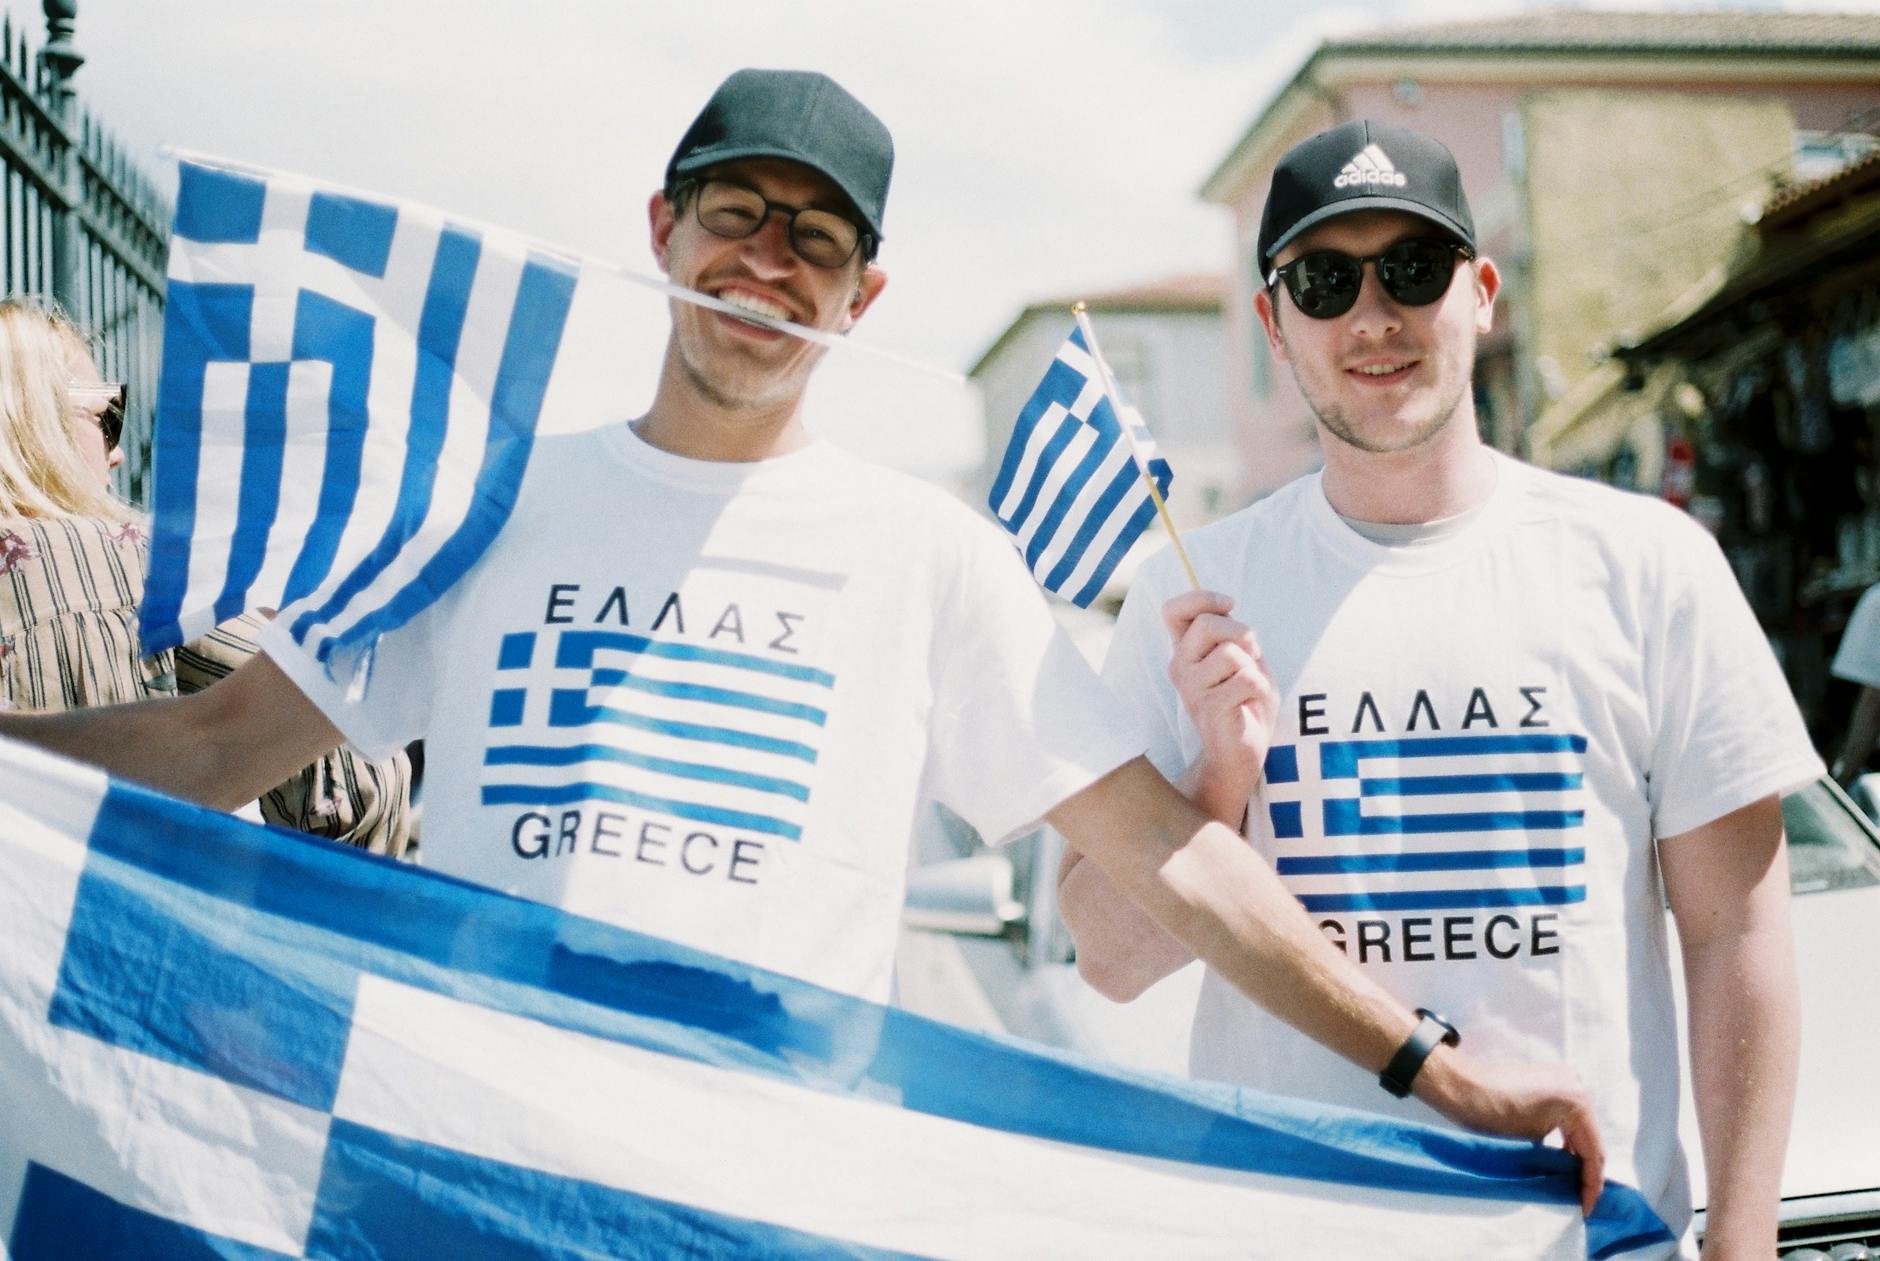 Mann trägt T-Shirts und hält griechische Flaggen in der Hand